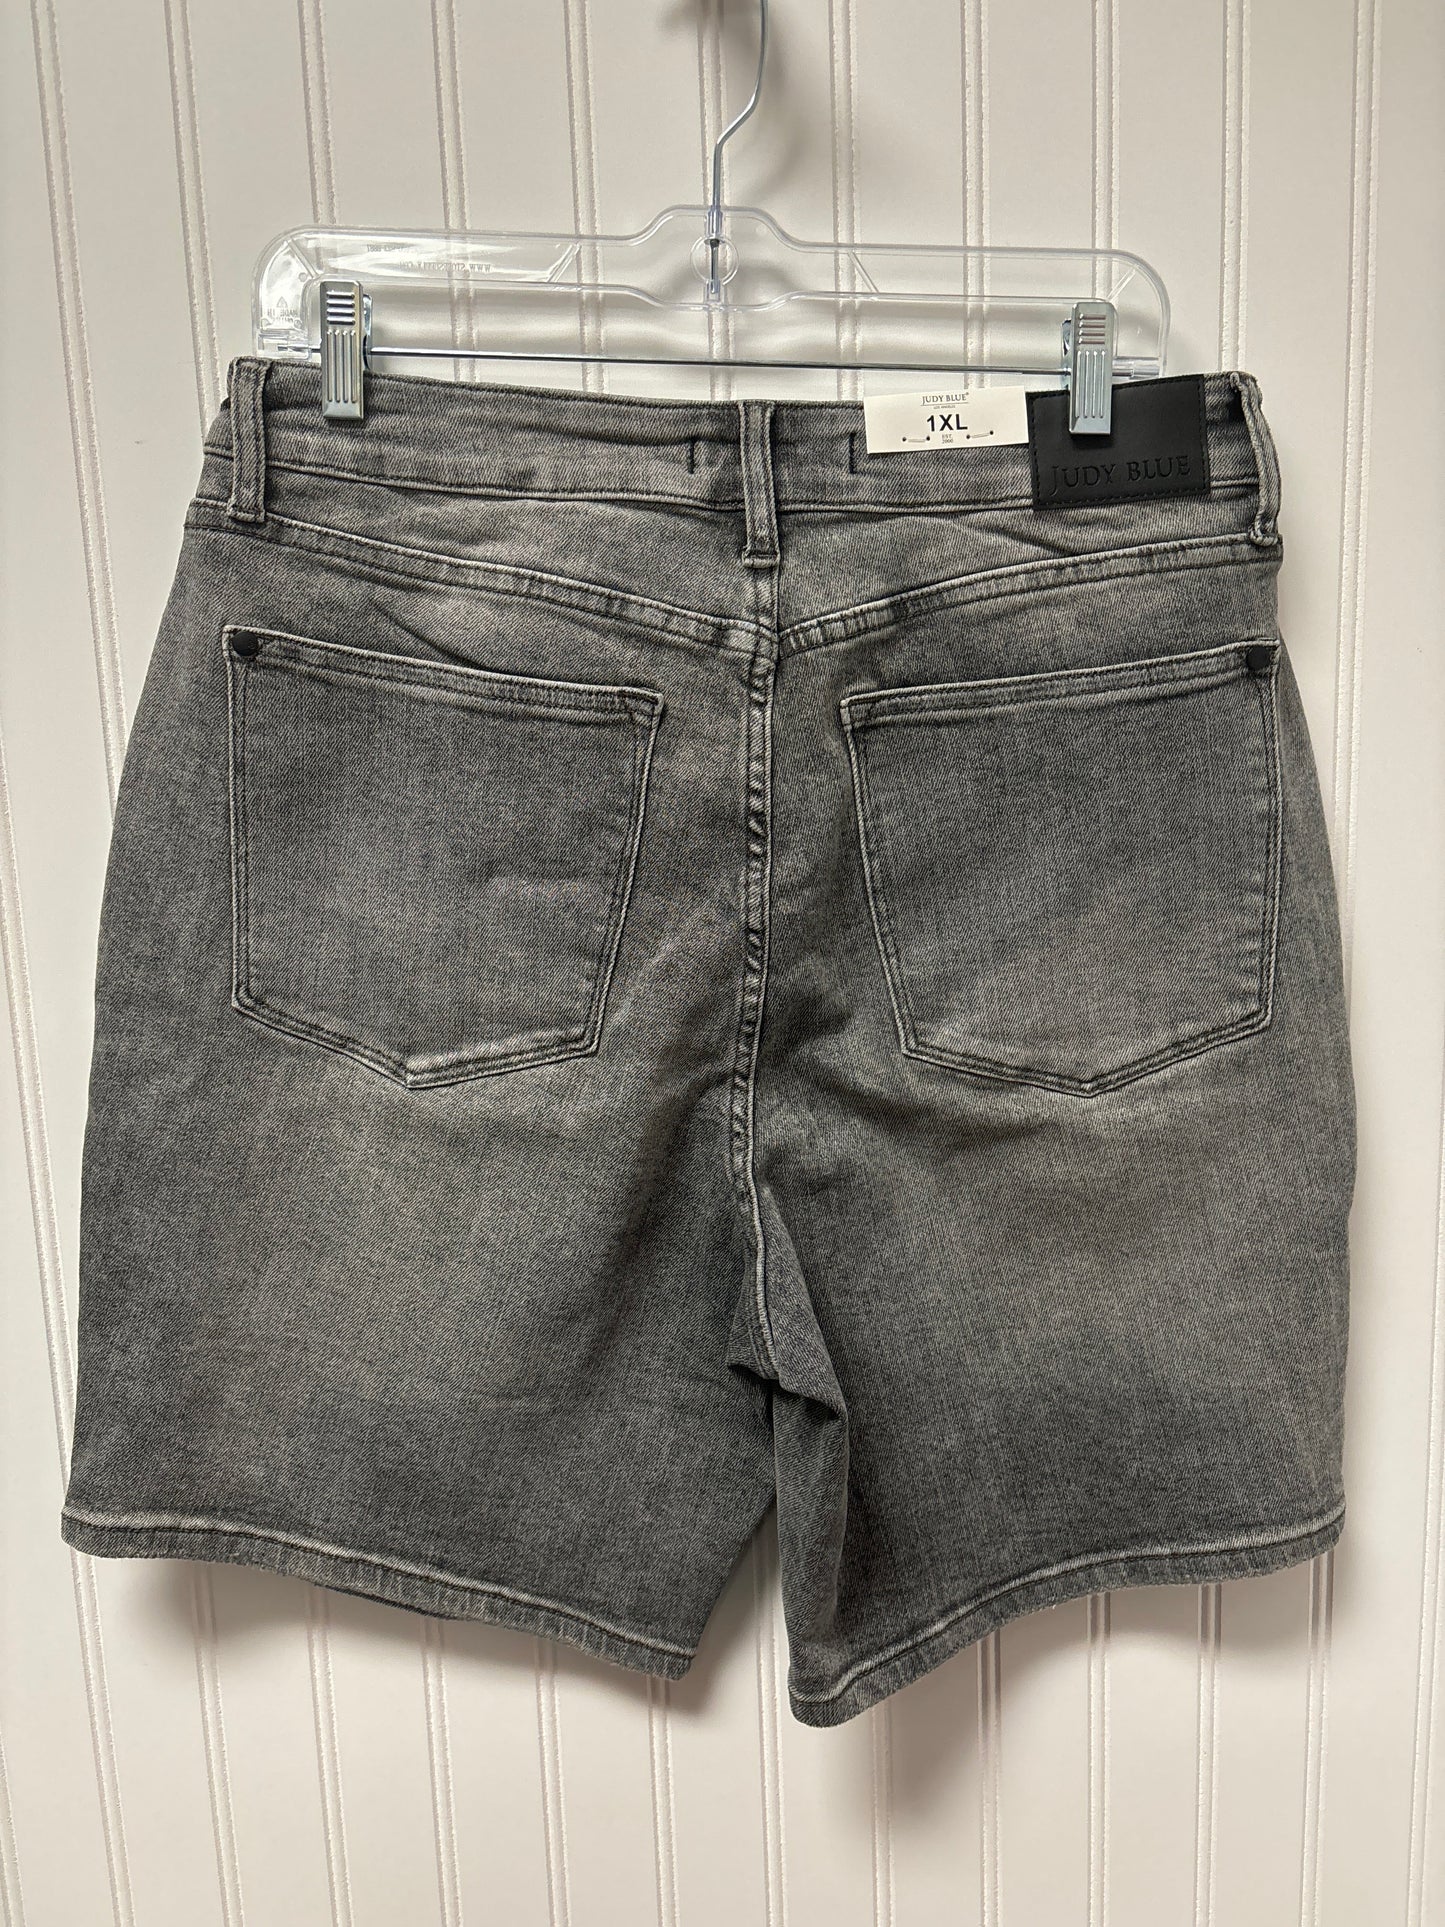 Grey Denim Shorts Judy Blue, Size 1x